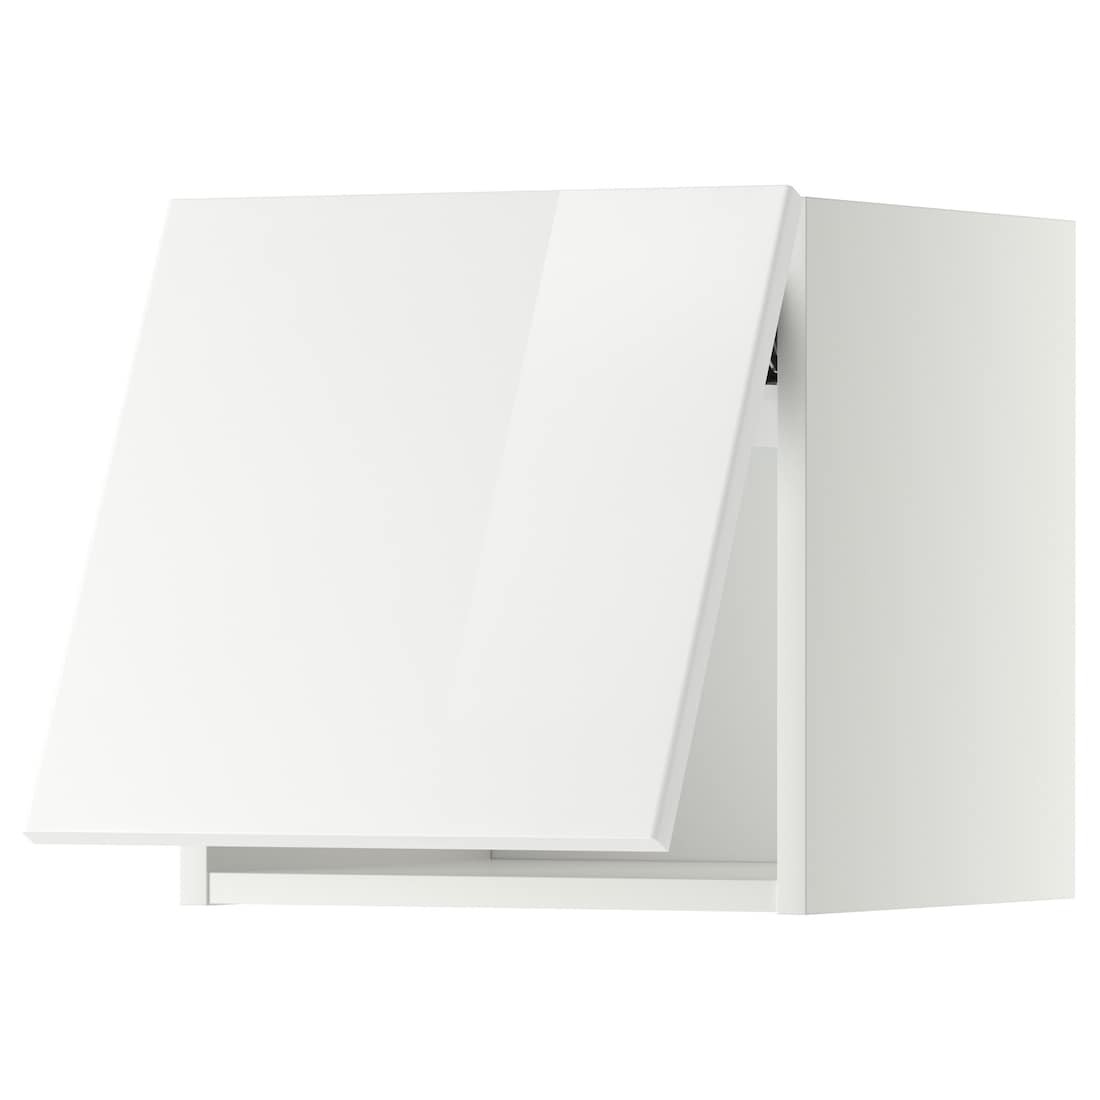 METOD МЕТОД Навесной горизонтальный шкаф, белый / Ringhult белый, 40x40 см